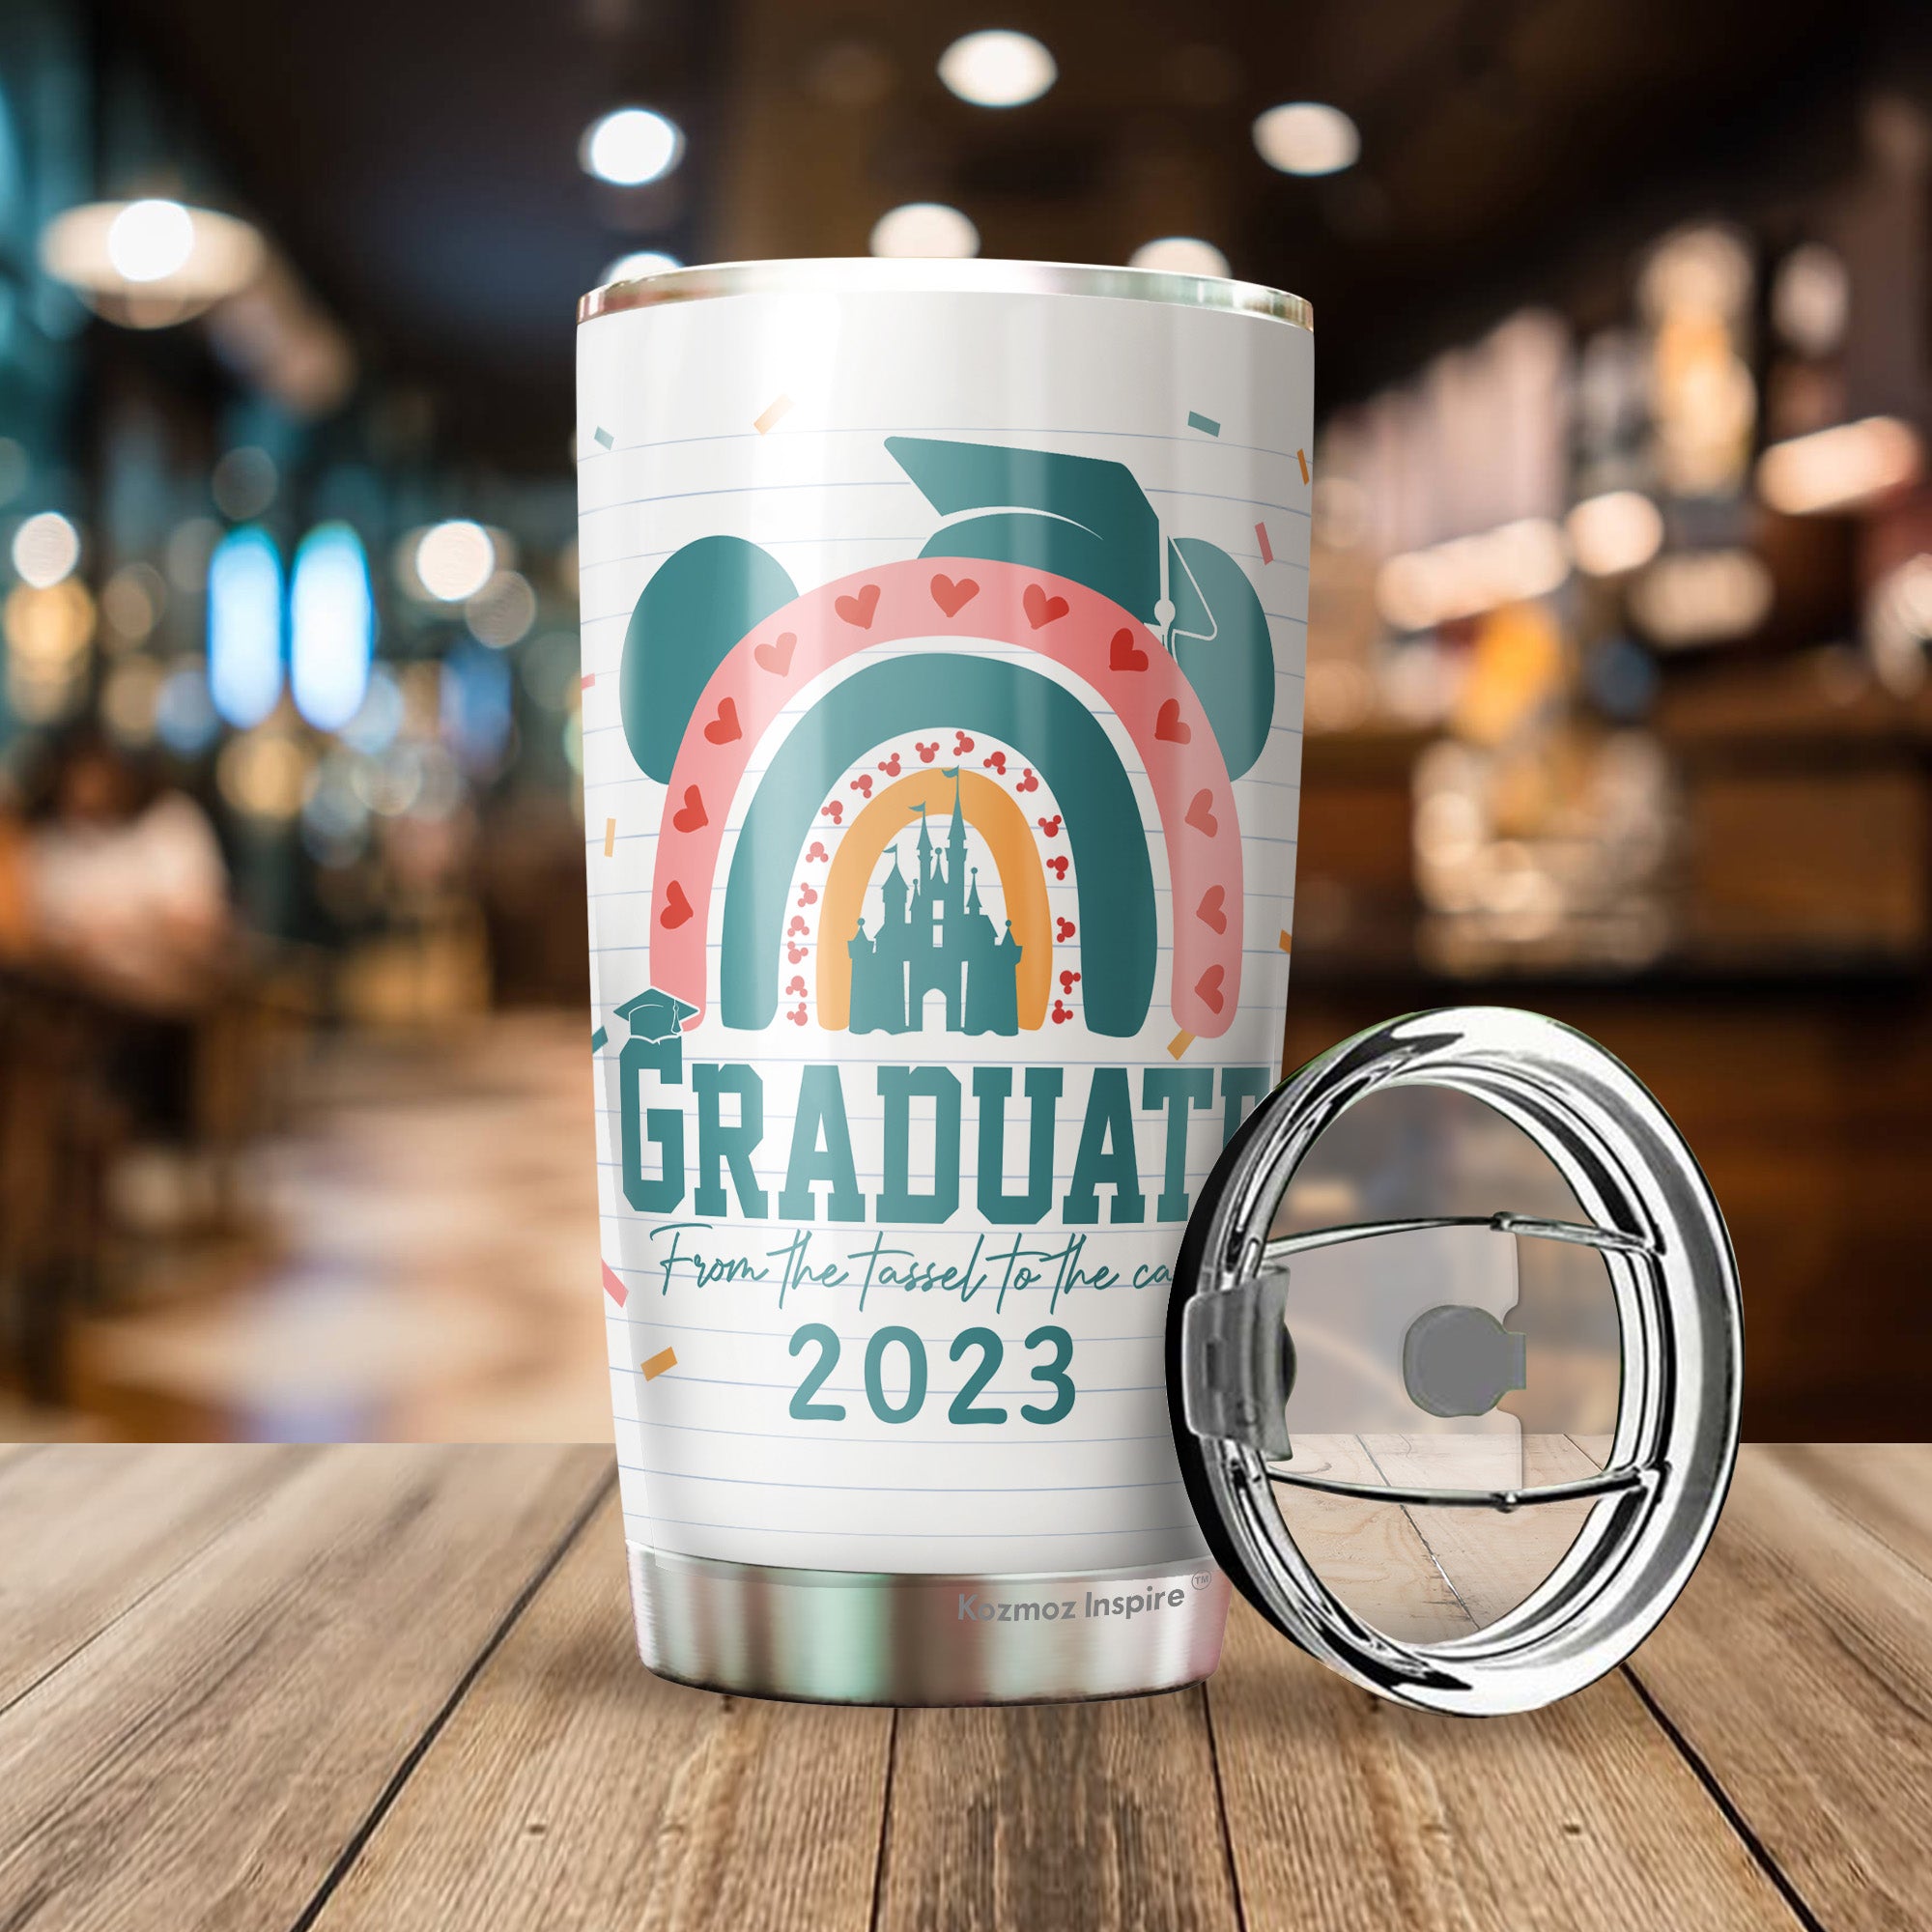 20 unique graduation gifts for 2023 graduates